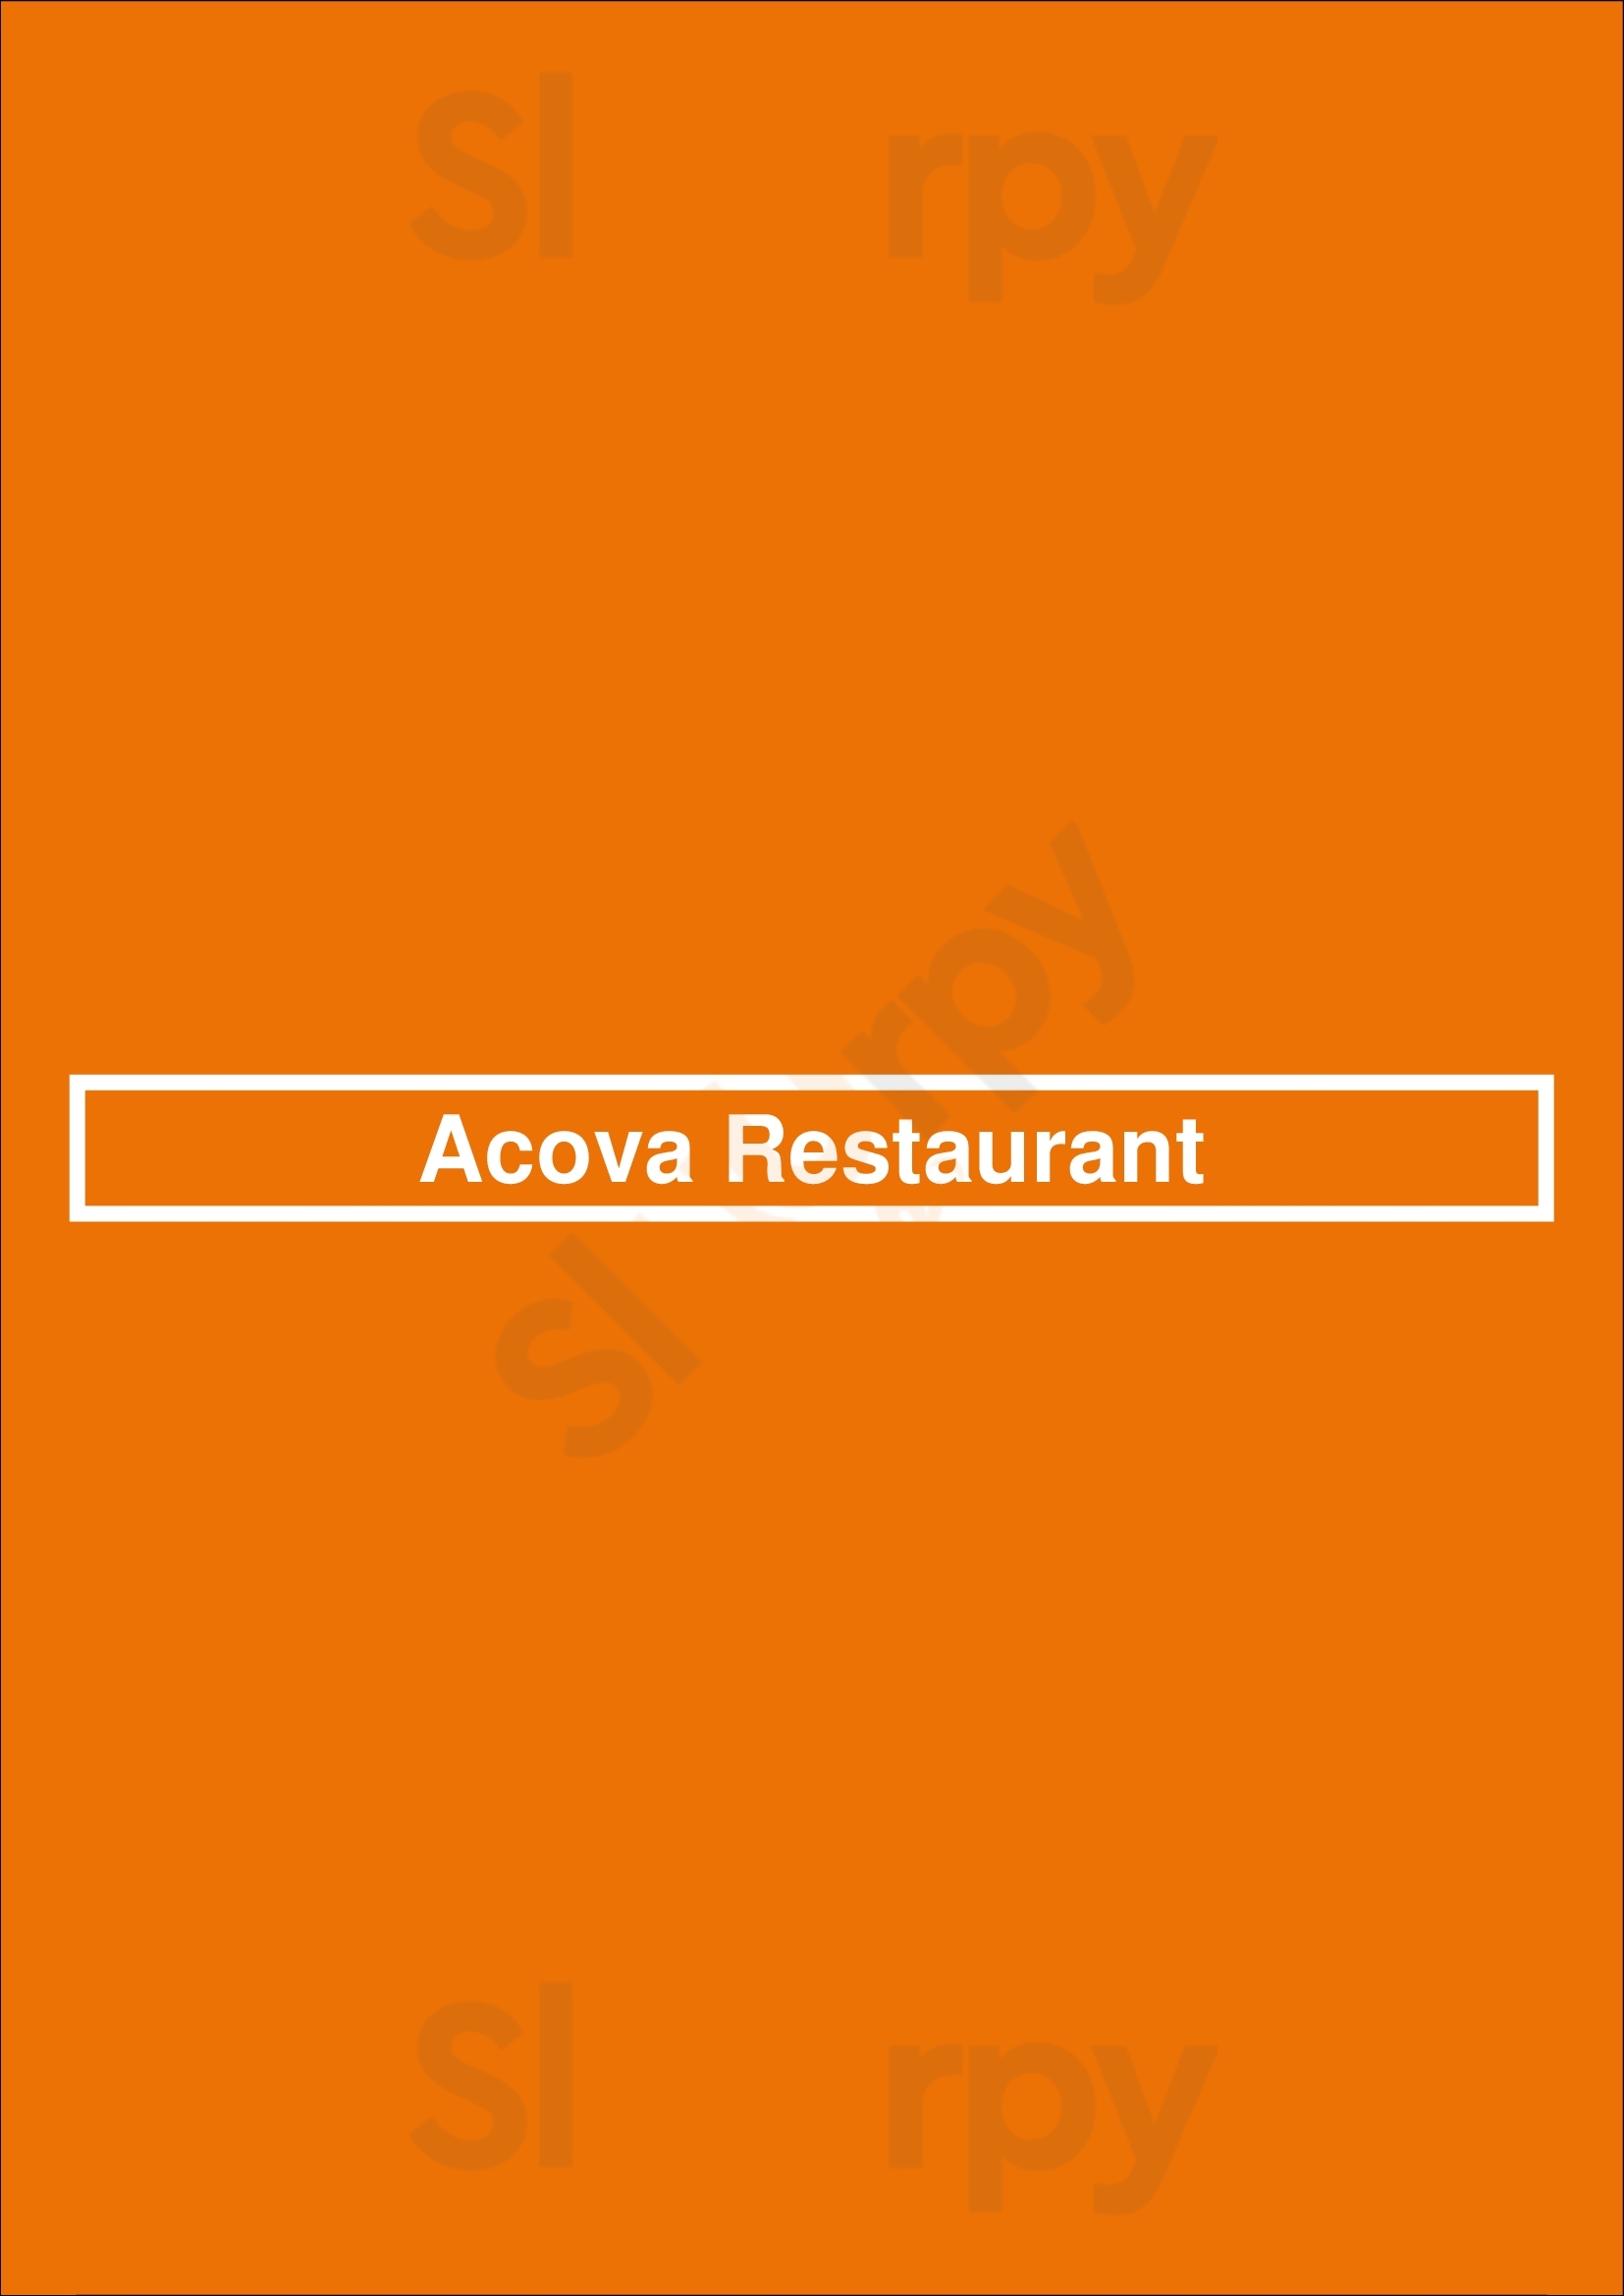 Acova Restaurant Denver Menu - 1